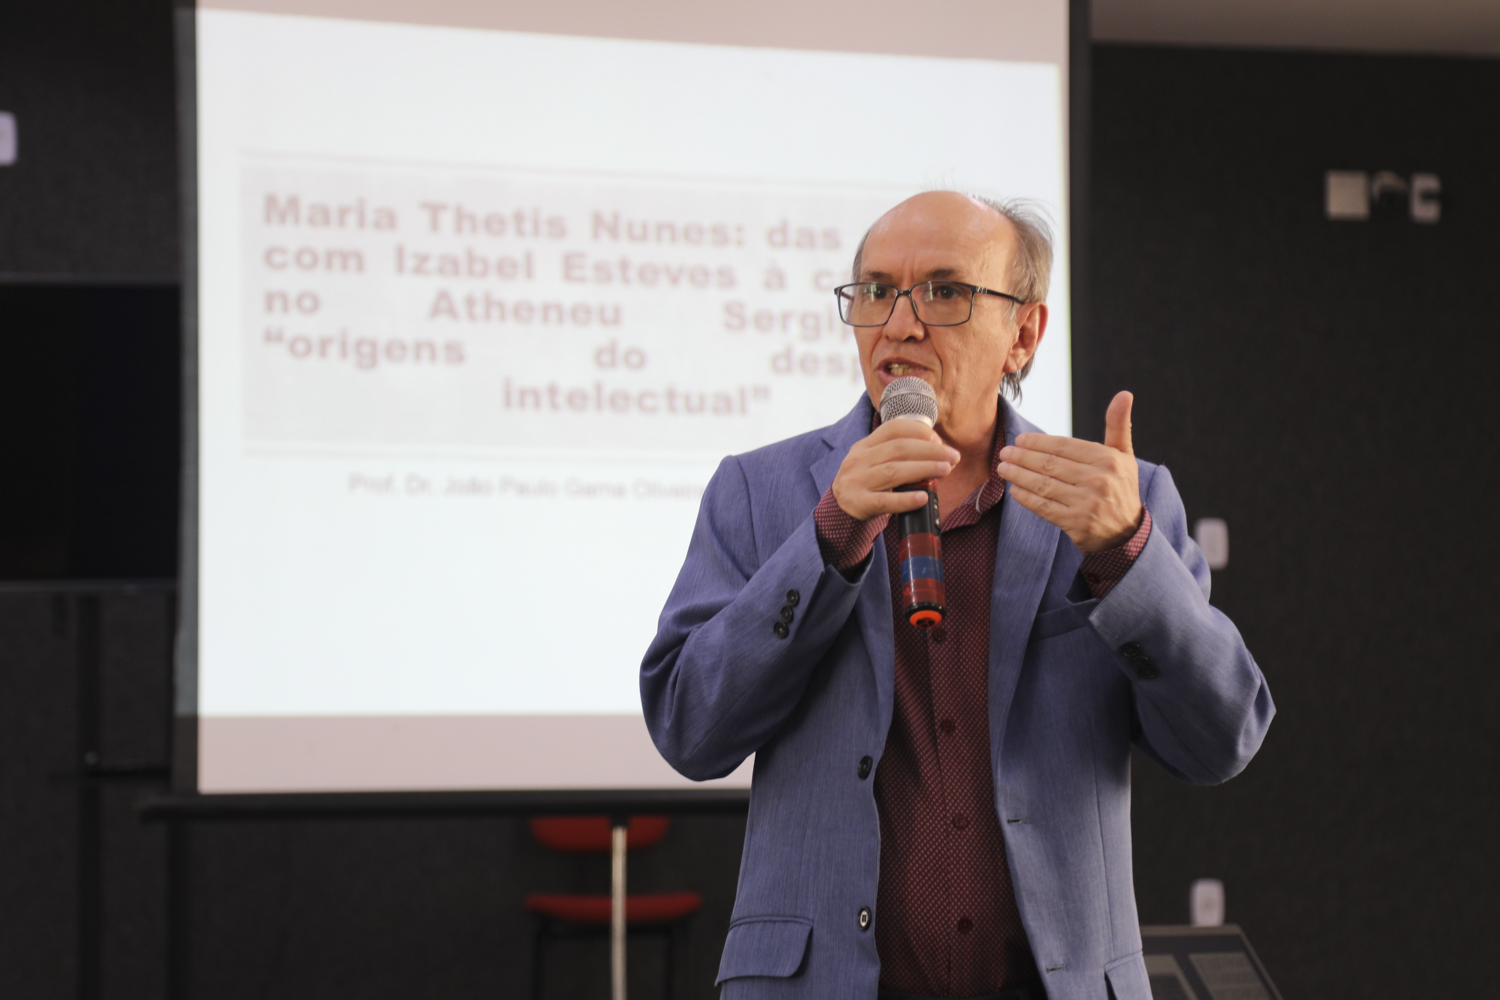 Rosalvo Ferreira, vice-reitor da UFS, destacou o engajamento de Thetis na educação sergipana. (Fotos: Adilson Andrade - Ascom UFS)